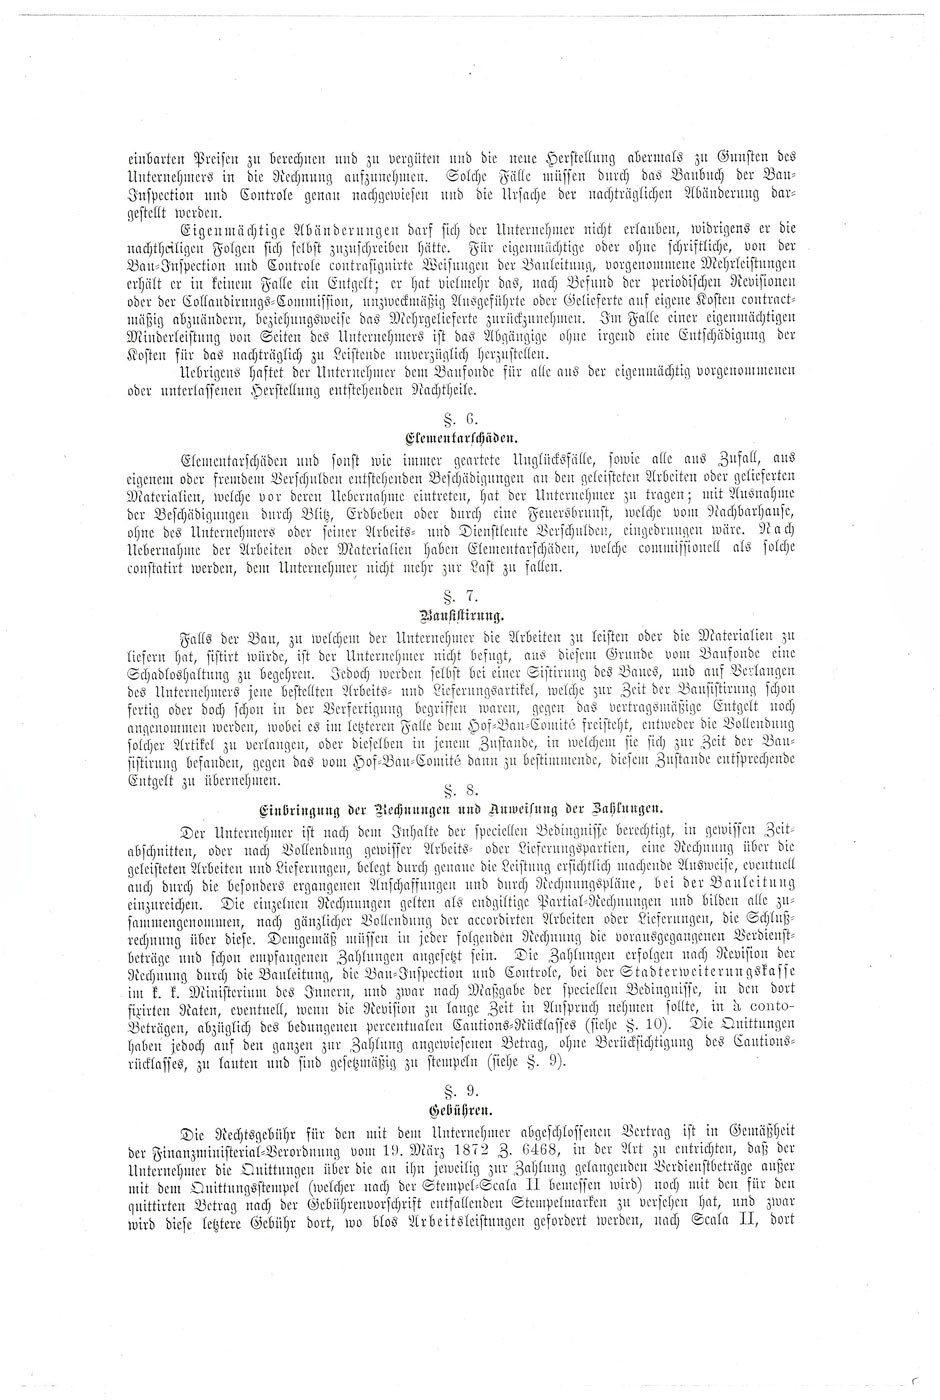 ÖStA: AT-OeStA/AVA Inneres MdI STEF A Hofbauk. 15.47 Zl. 4412 vom 19.07.1879; Blatt 4